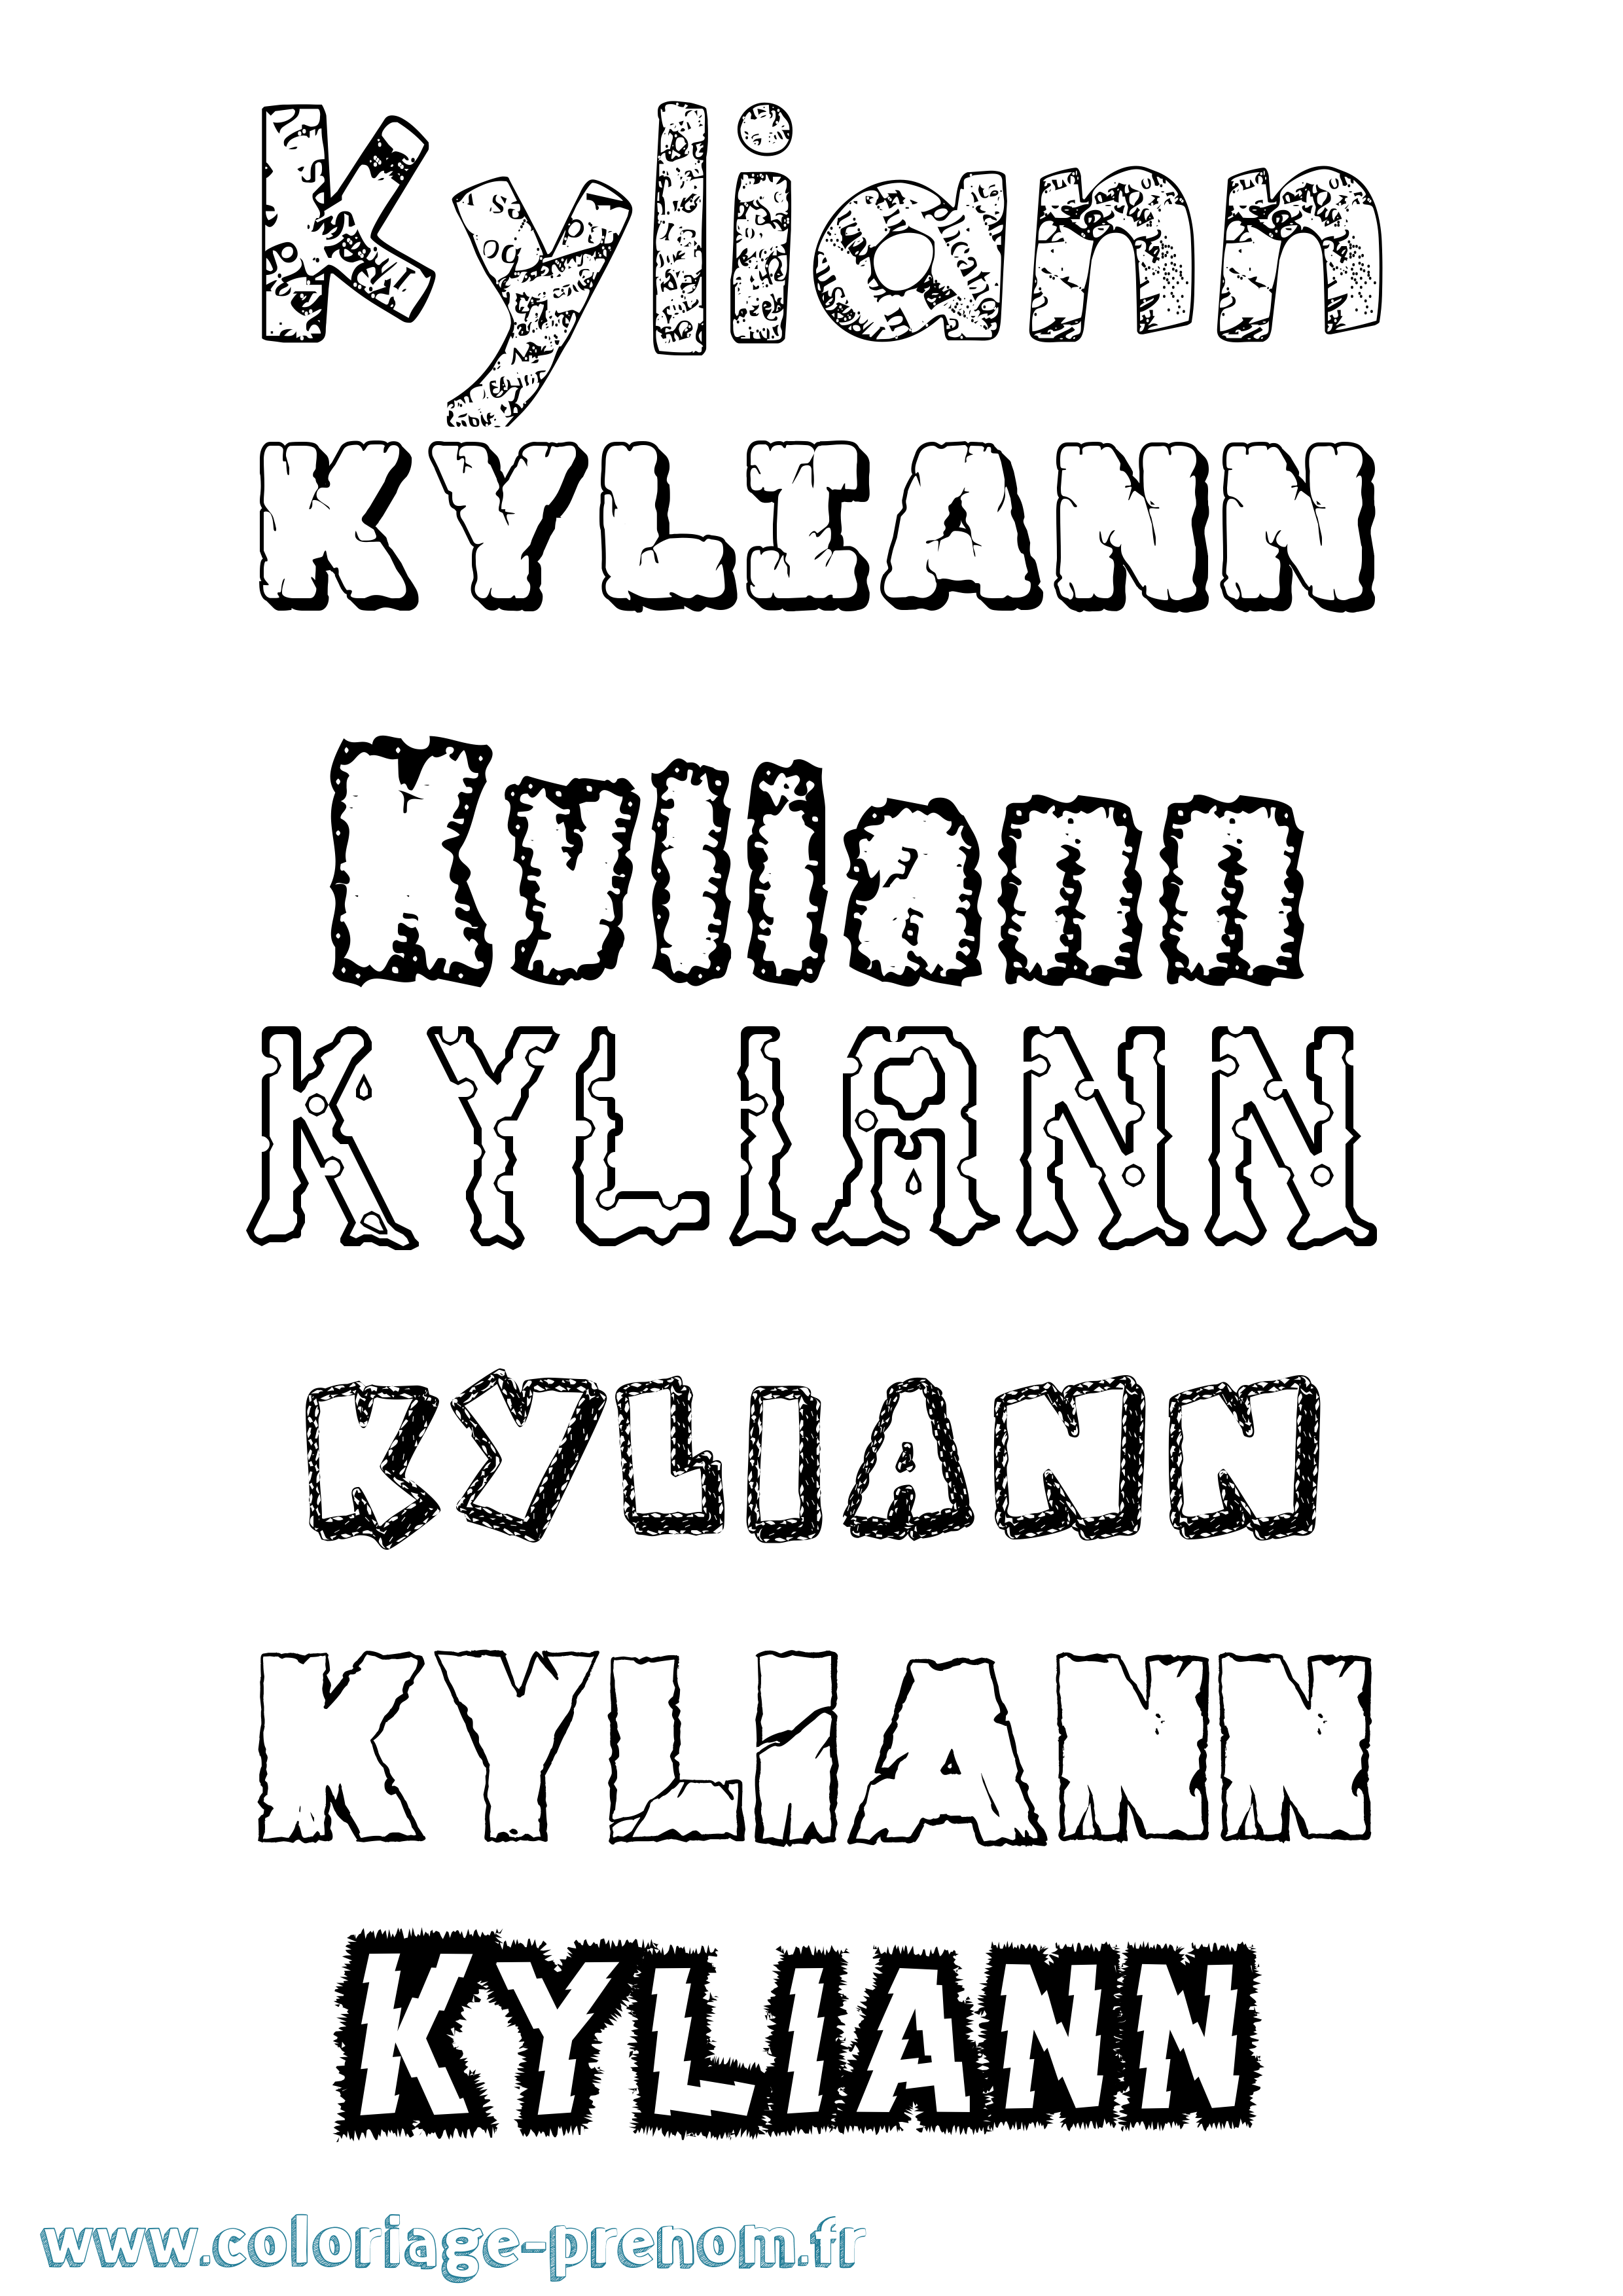 Coloriage prénom Kyliann Destructuré